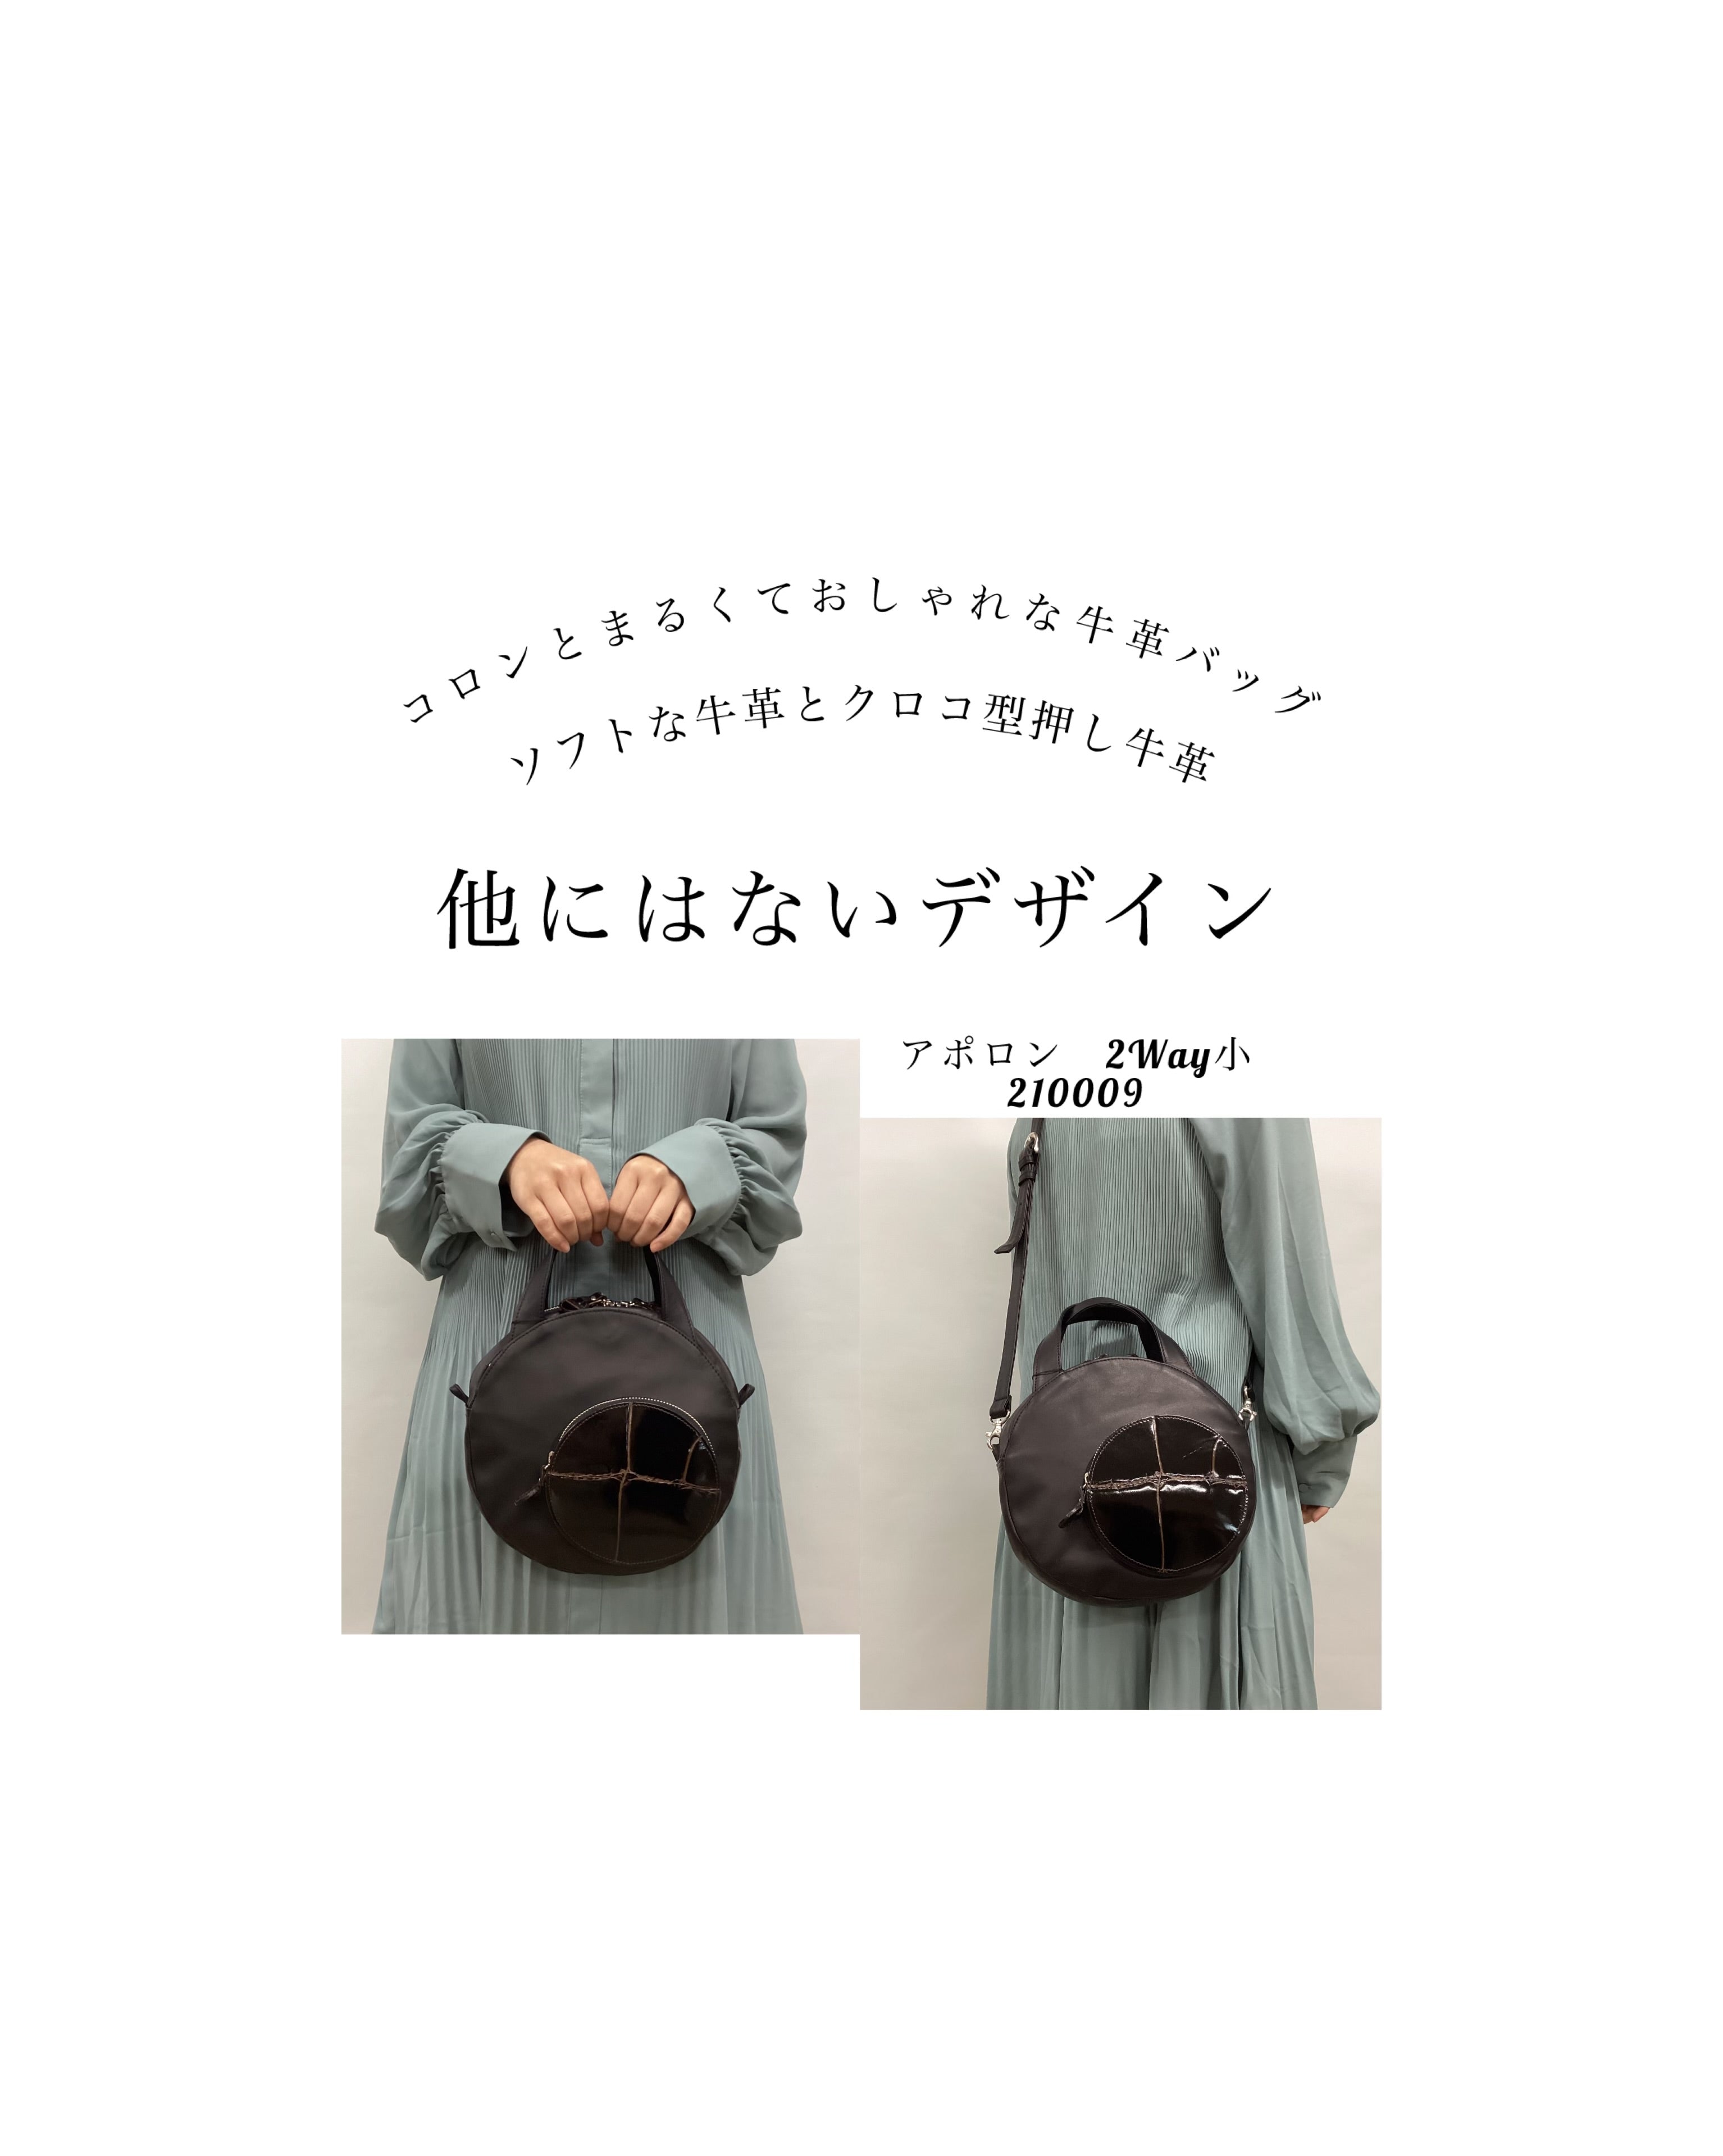 ラージクロコ型押しバッグ フォーマルバッグ 上品なハンドバッグ ショルダーバッグ 牛革 日本製 – LILY